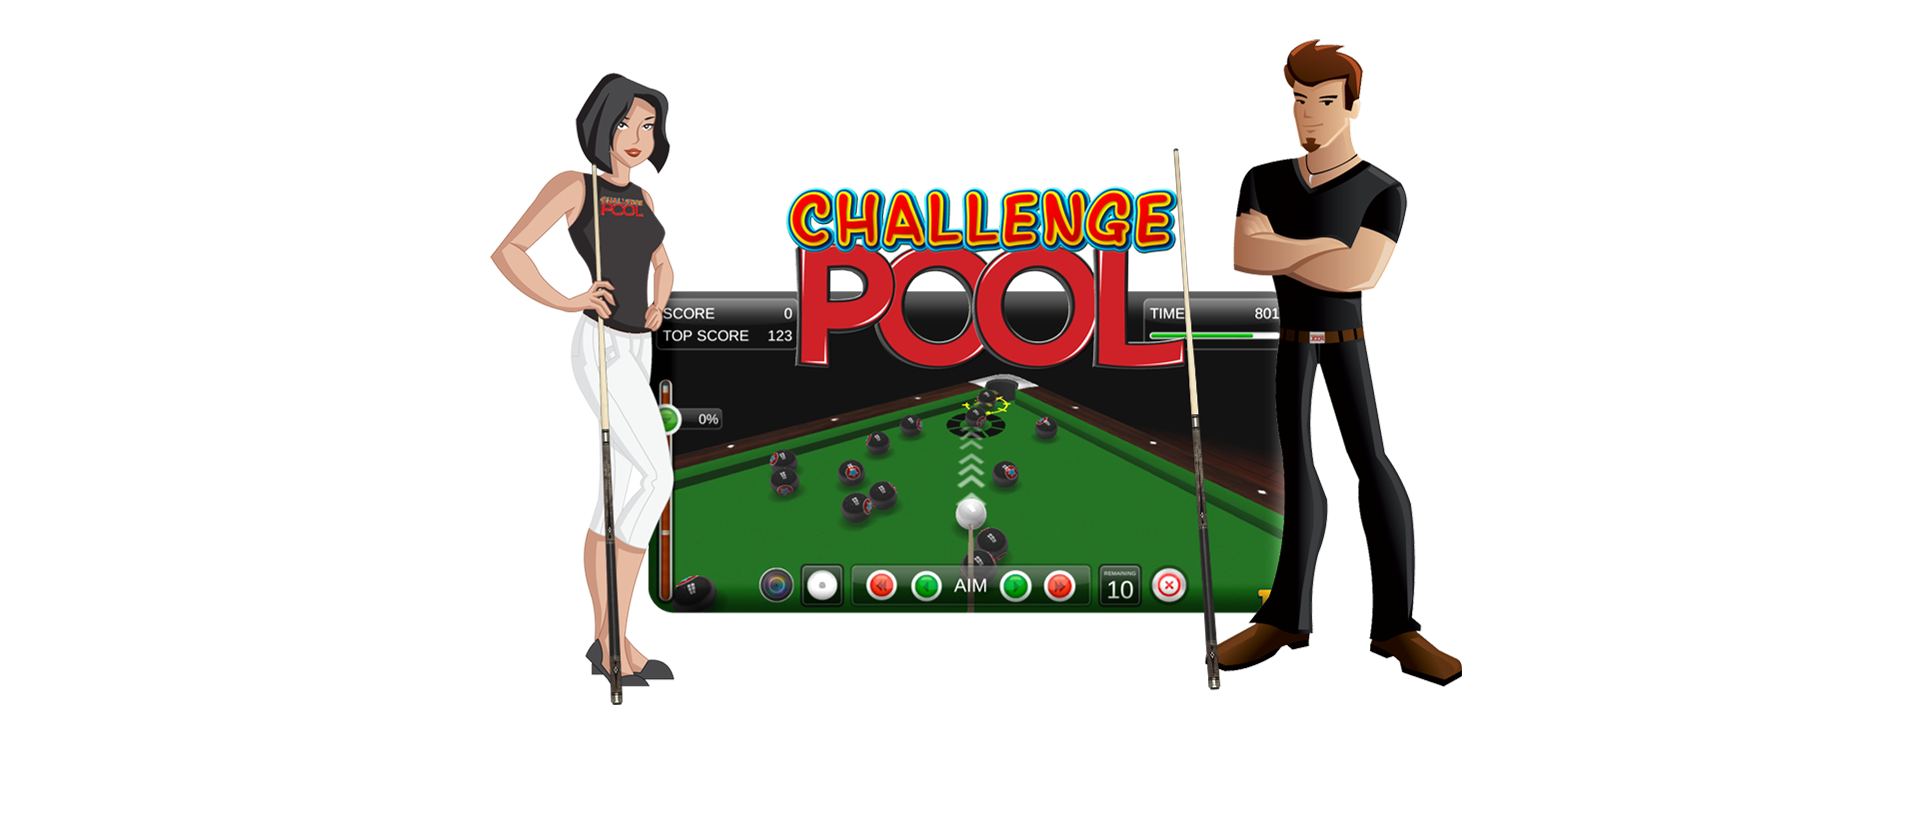 8Ball pool challenger